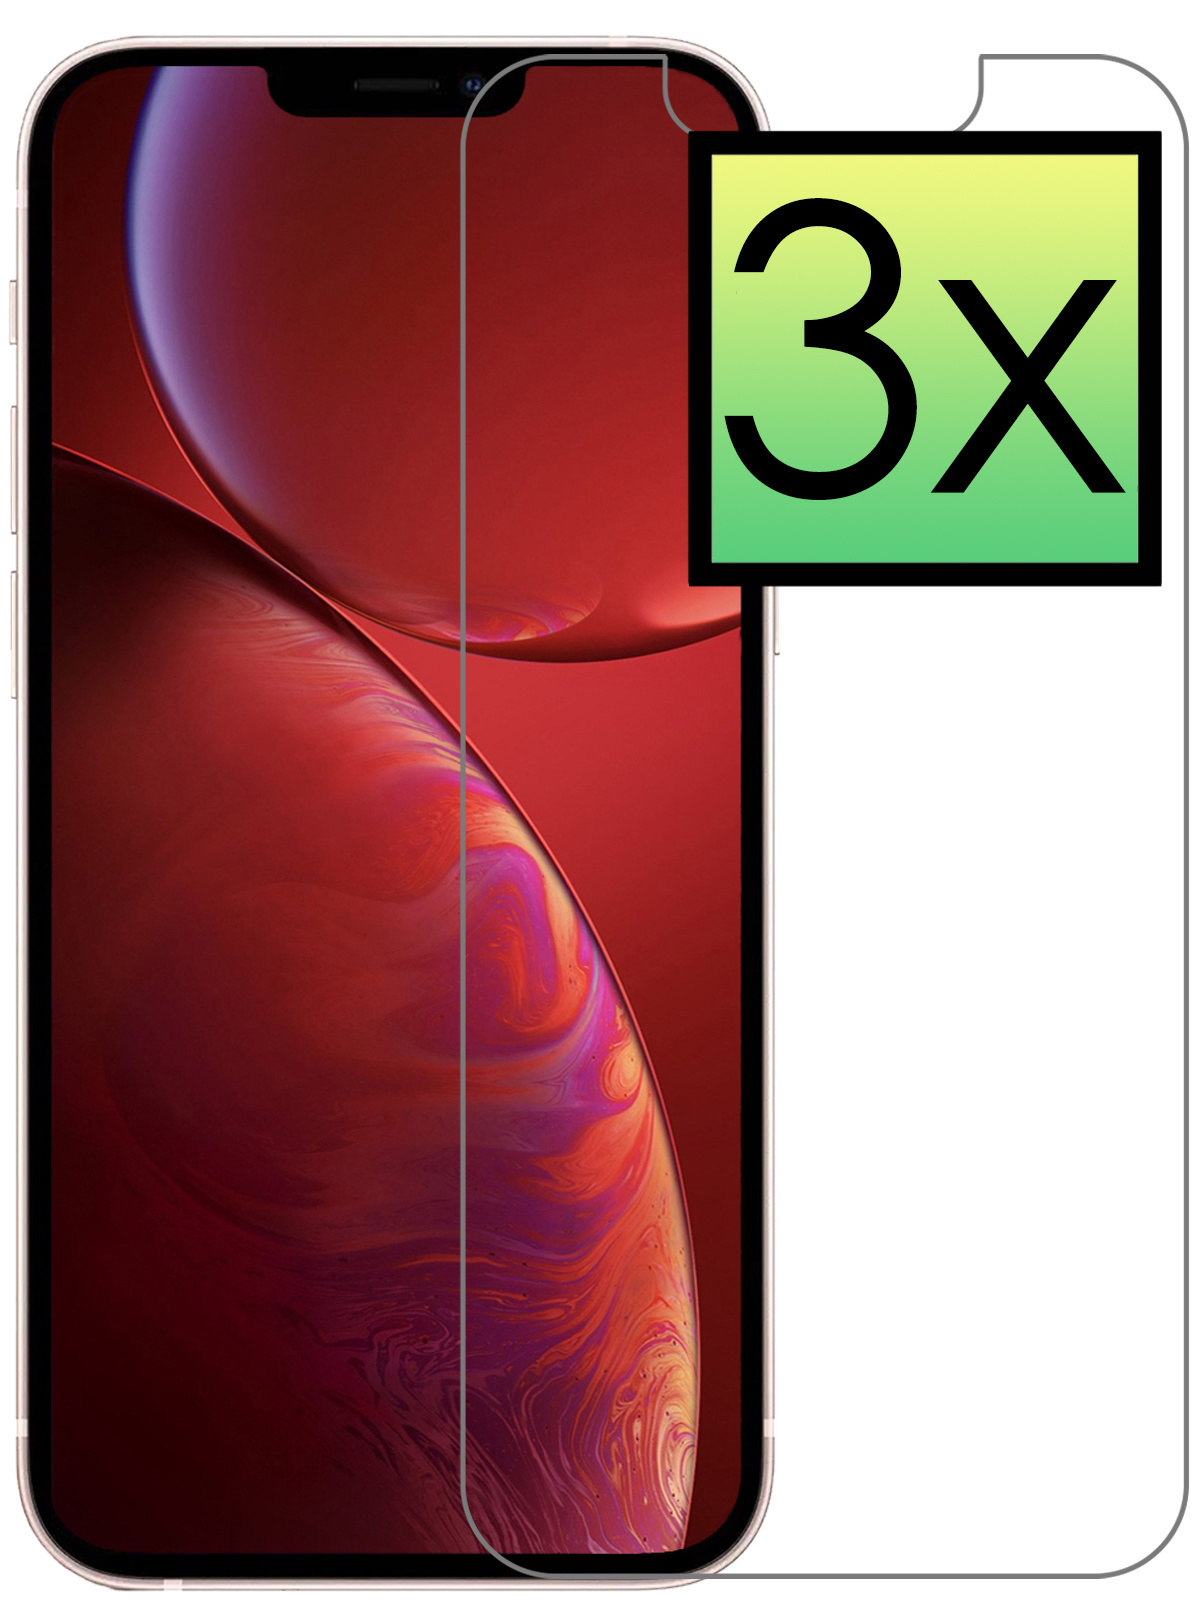 NoXx Screenprotector Geschikt voor iPhone 14 Screenprotector Tempered Glass Gehard Glas Beschermglas - 3x